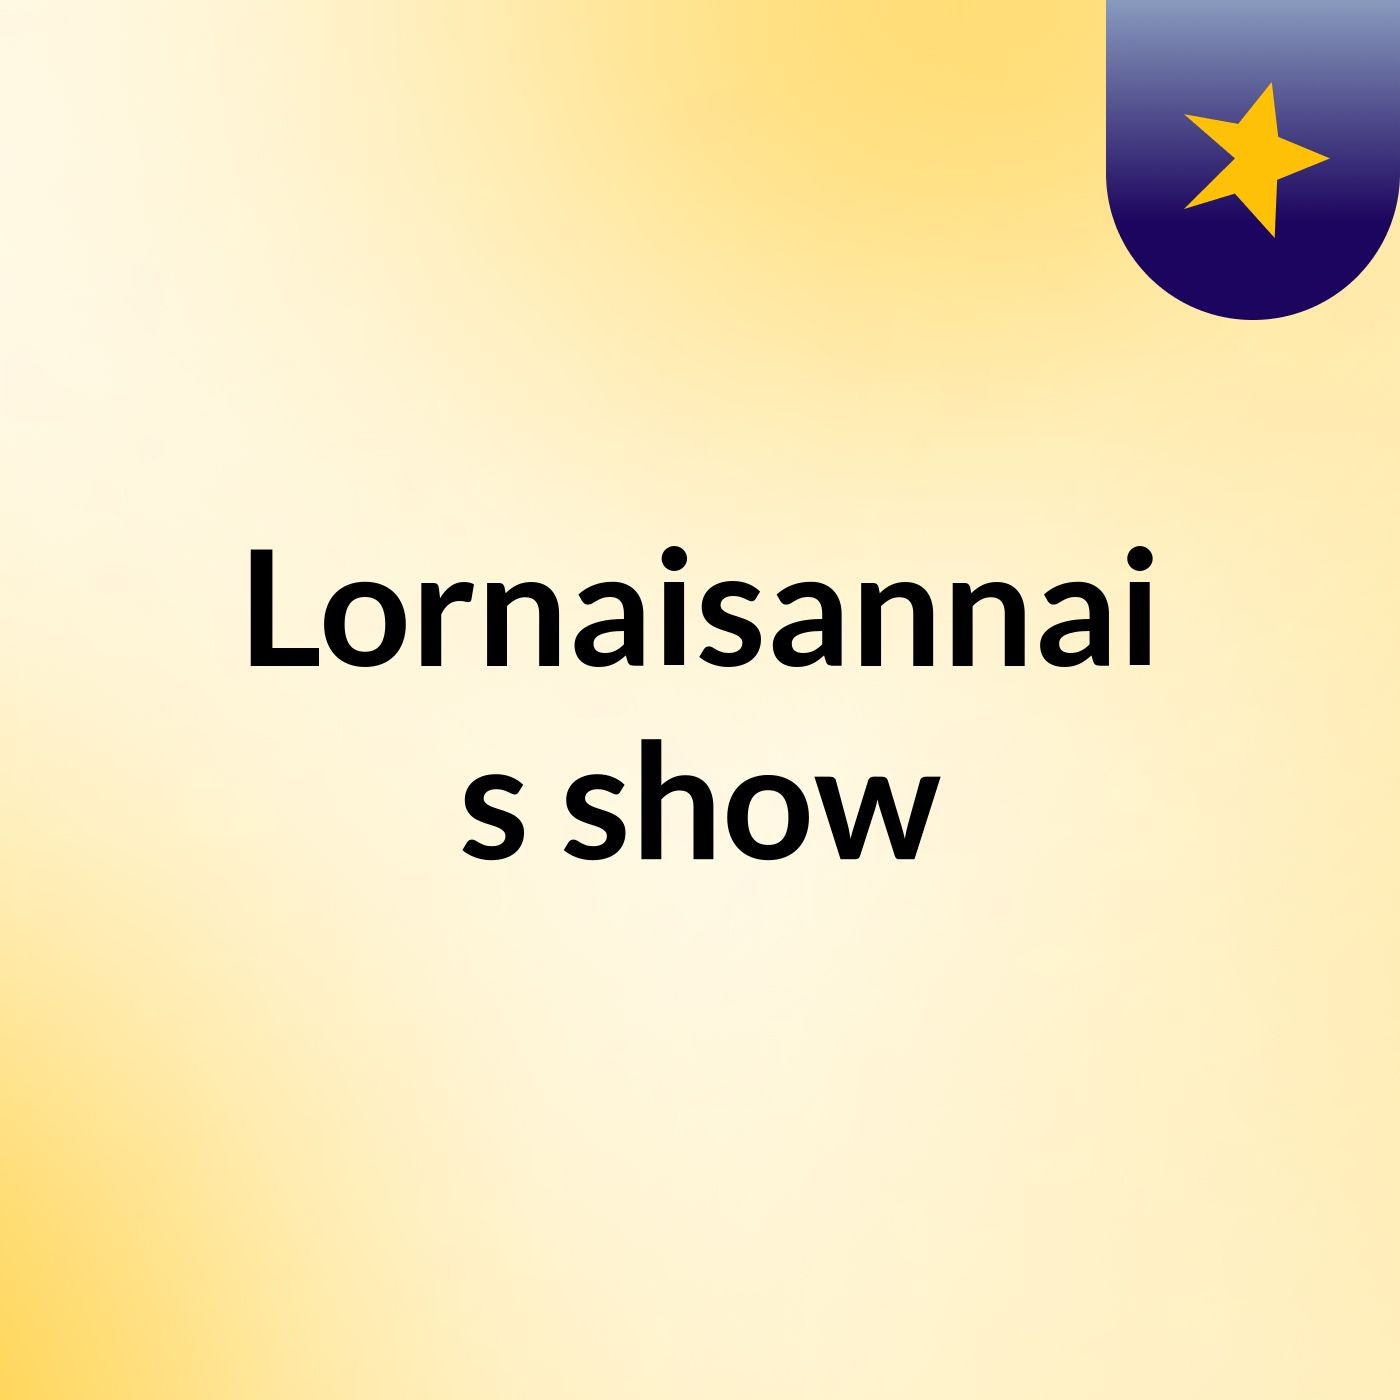 Lornaisannai's show